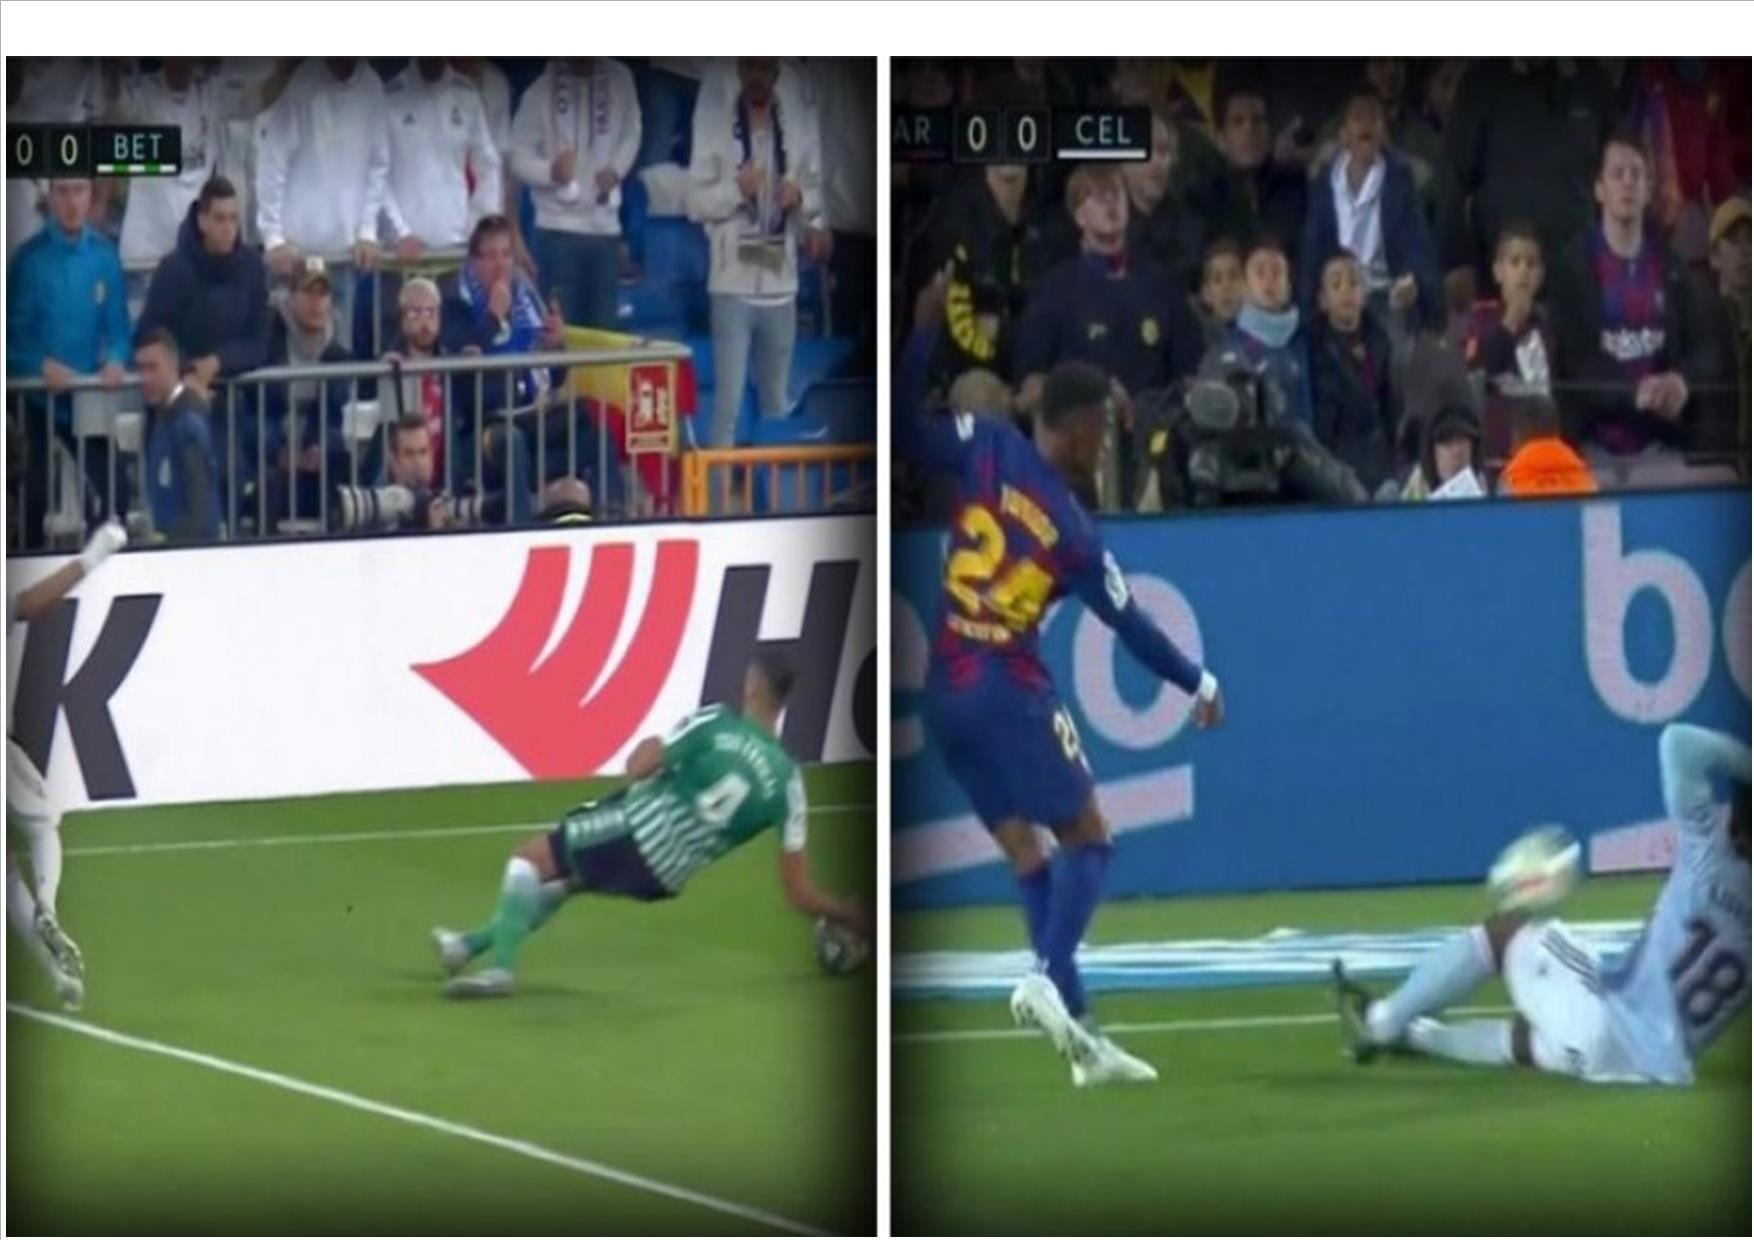 Barça-Celta Vigo : Comment le Penalty de Messi énerve les fans et médias madrilènes